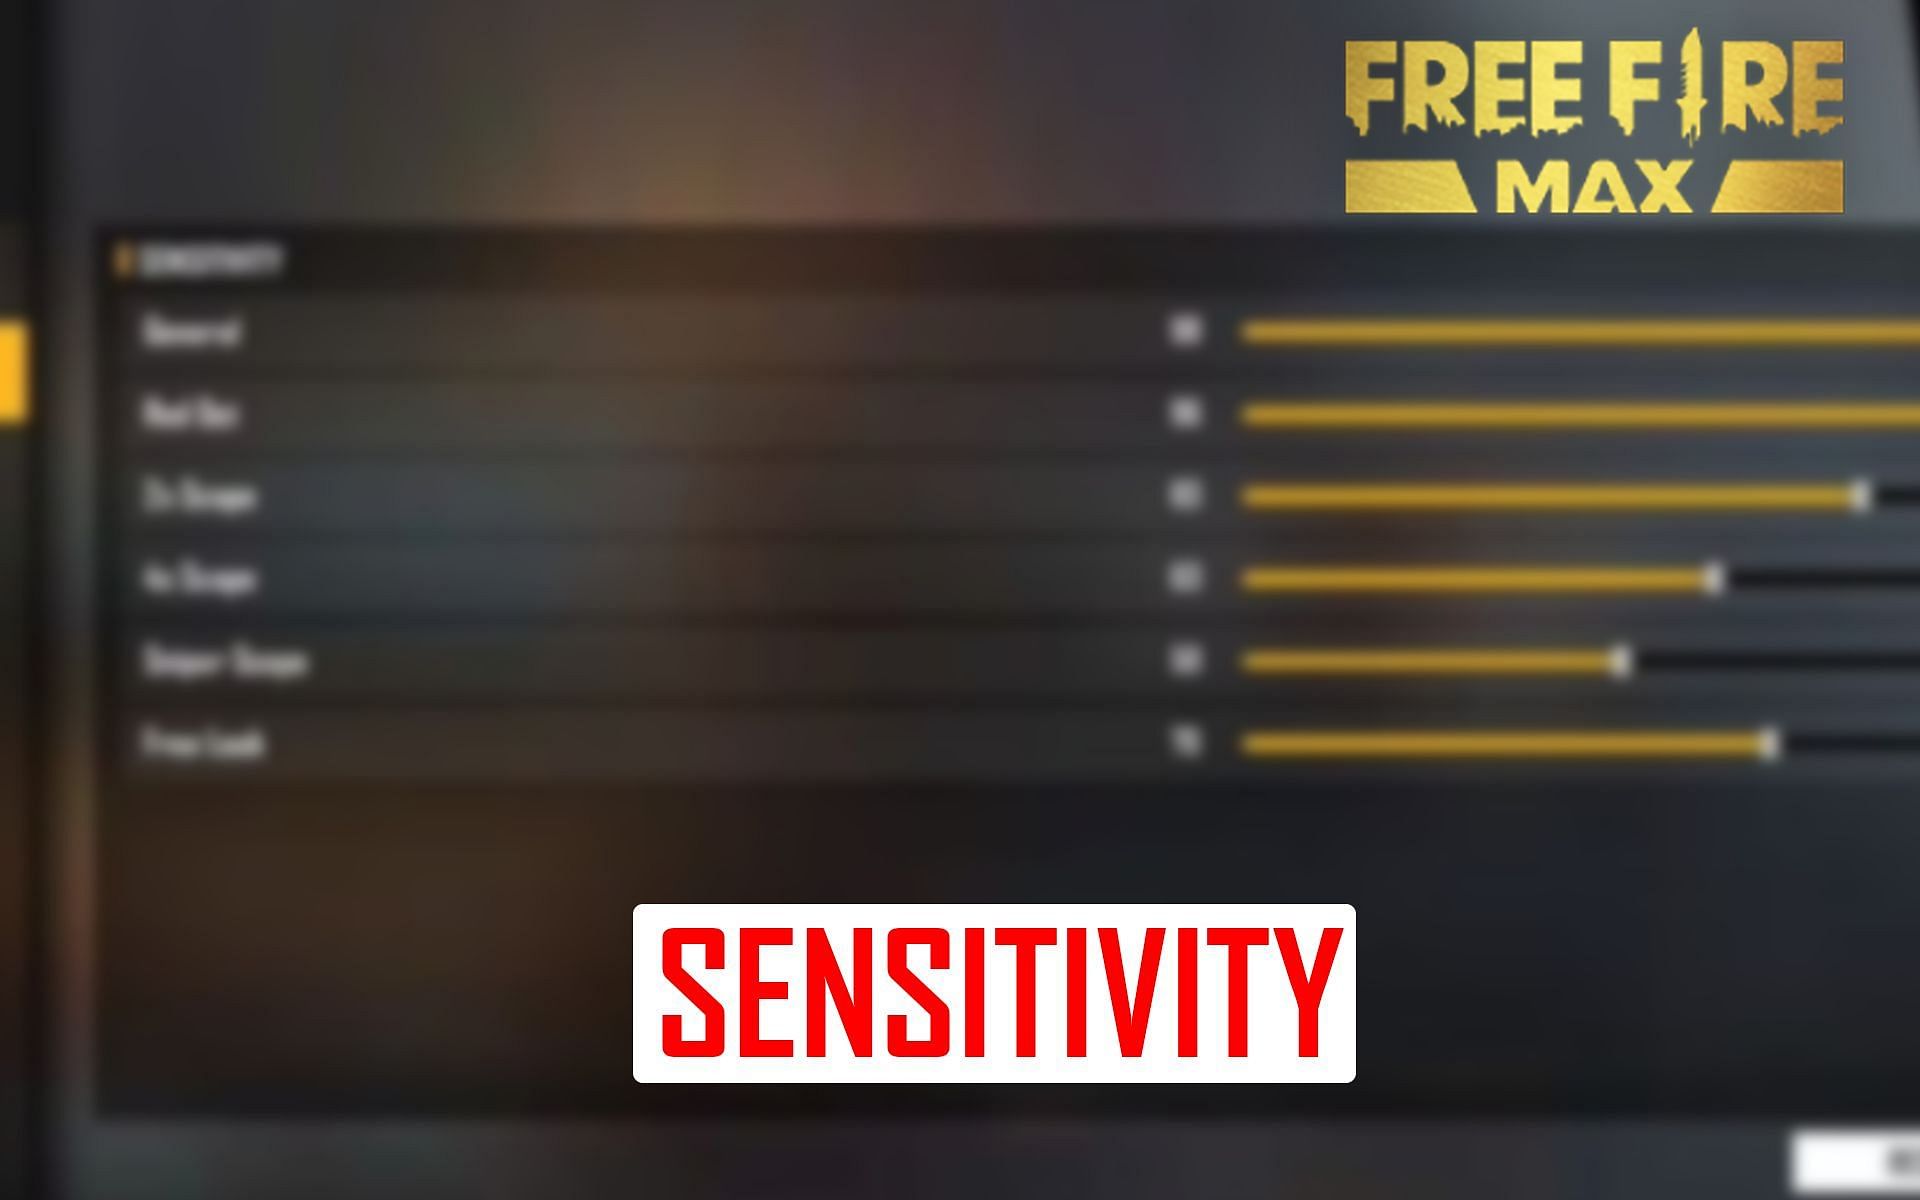 Beginners can tweak their sensitivity settings to improve their gameplay (Image via Sportskeeda)